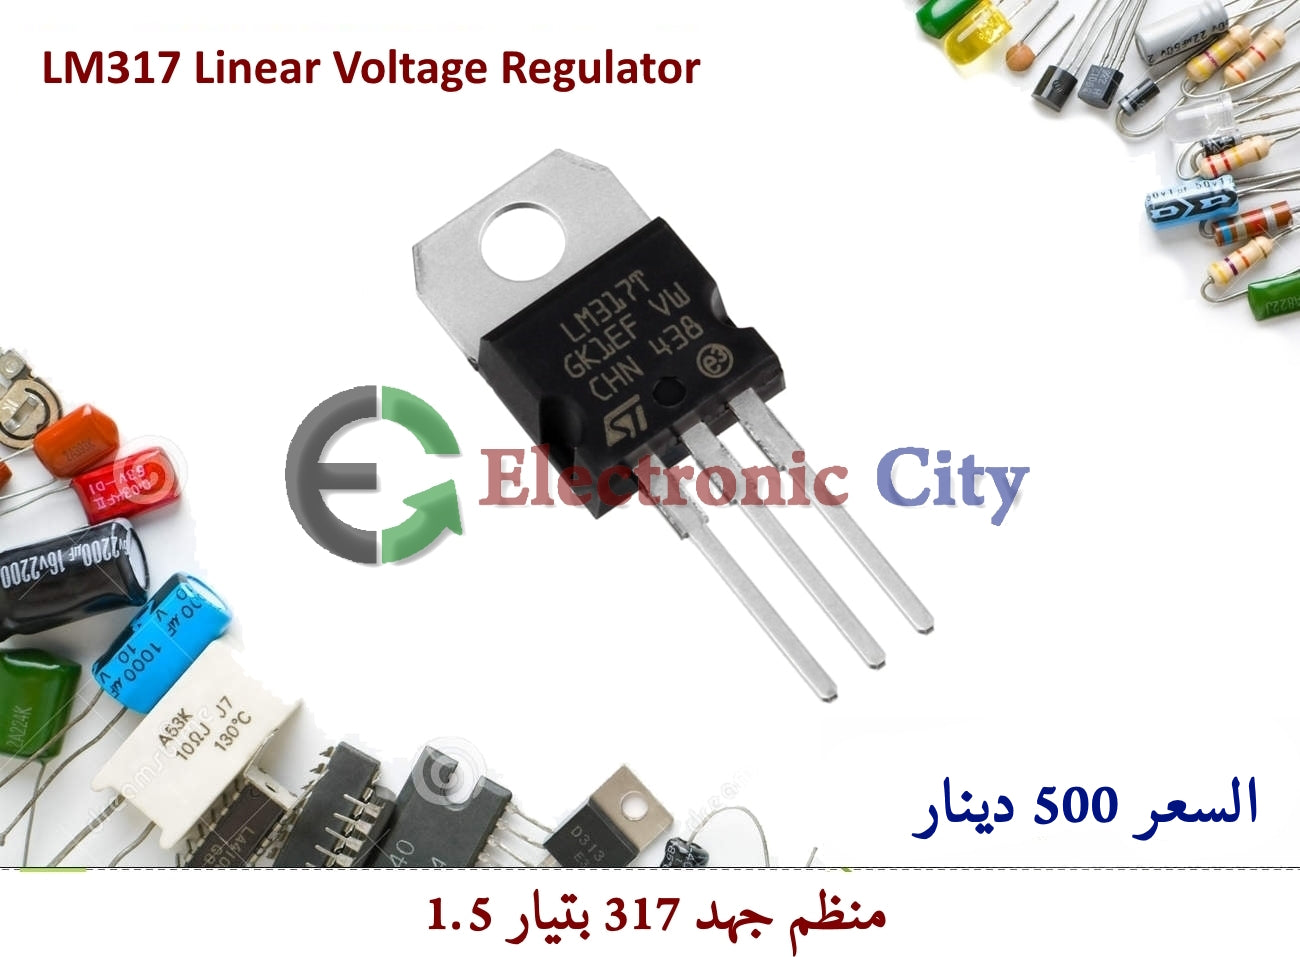 LM317 Linear Voltage Regulator